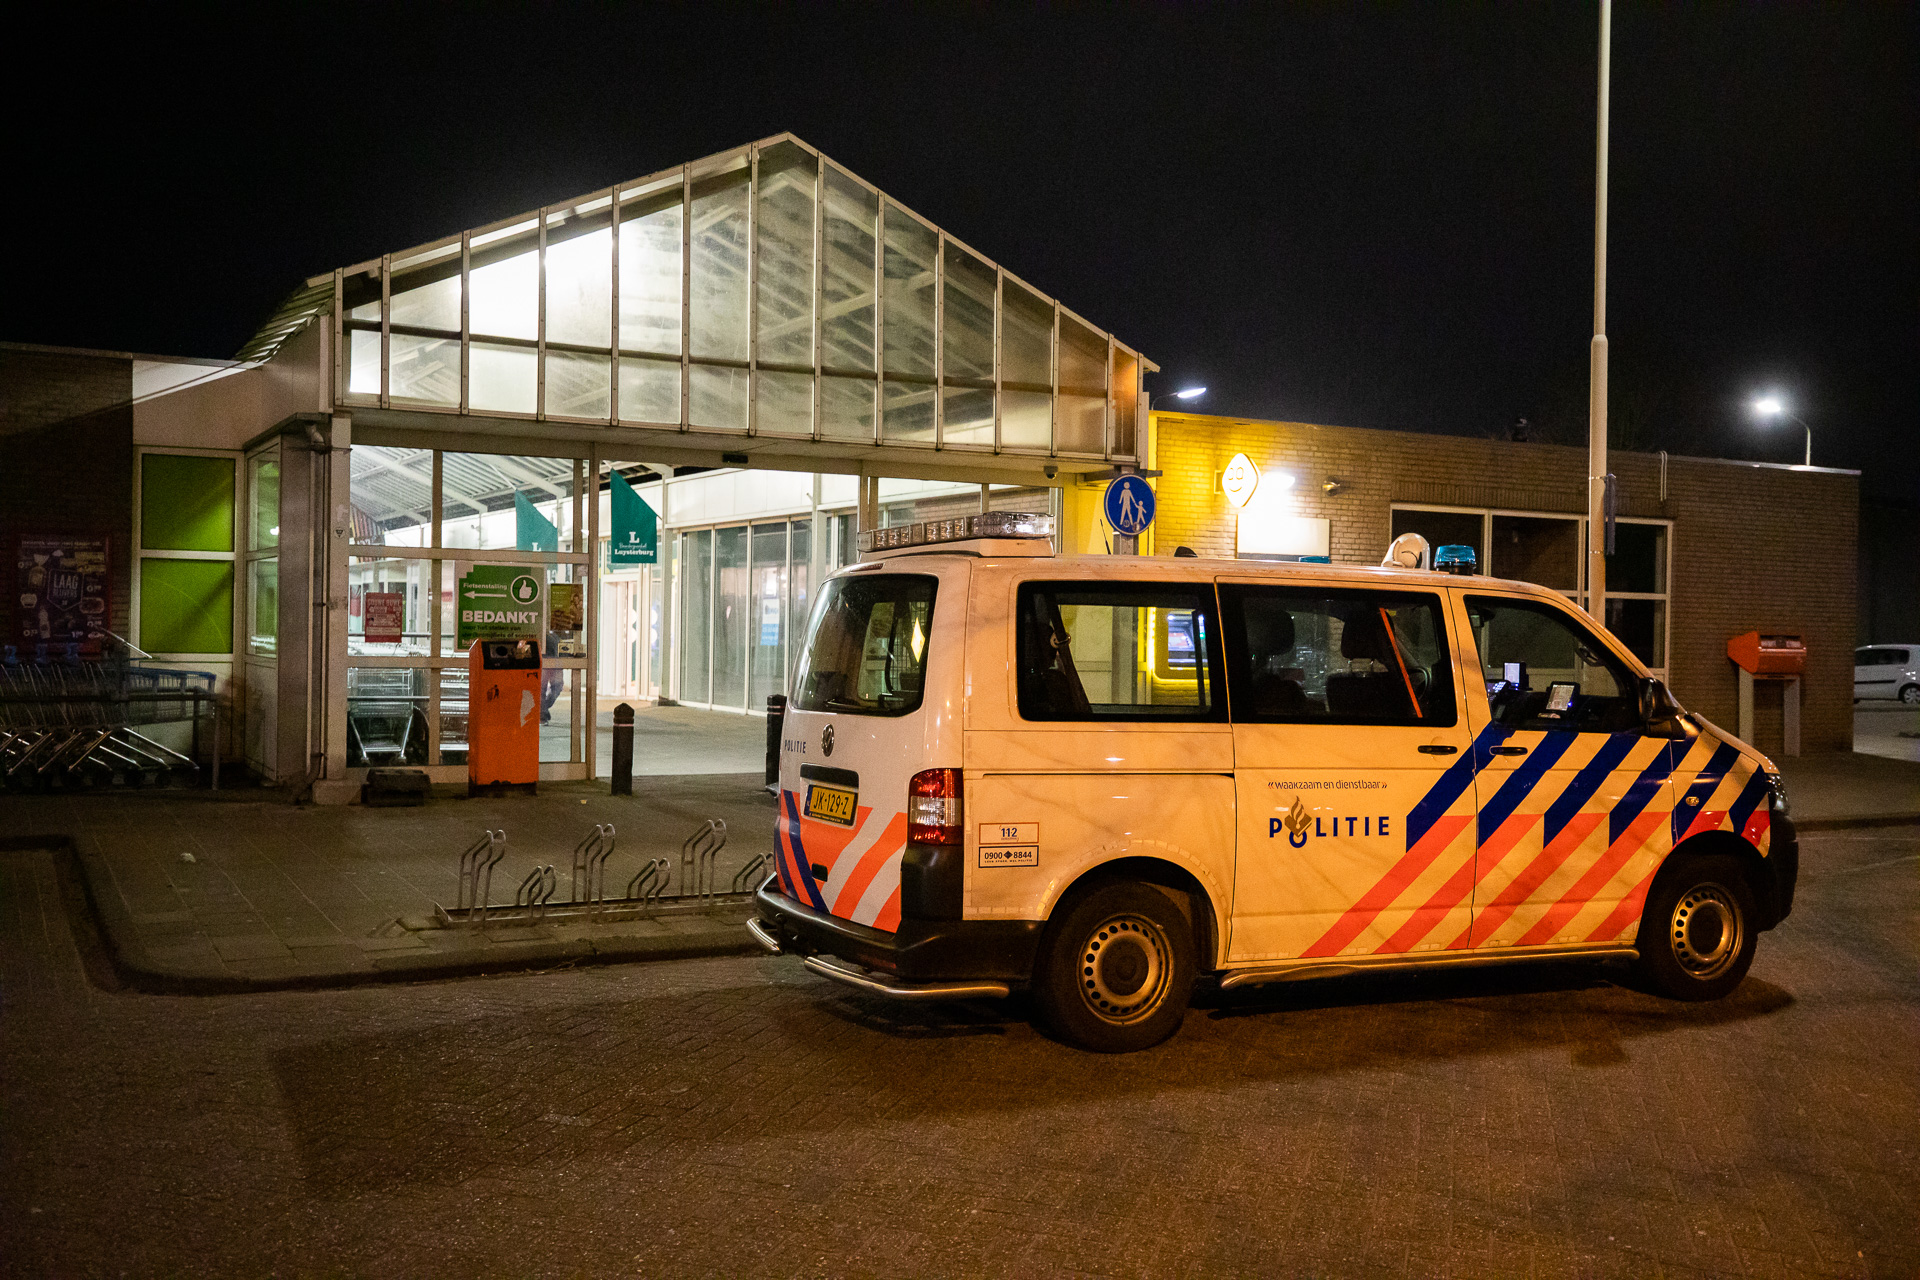 Opnieuw overval op supermarkt Tolbergcentrum, politie zoekt getuigen